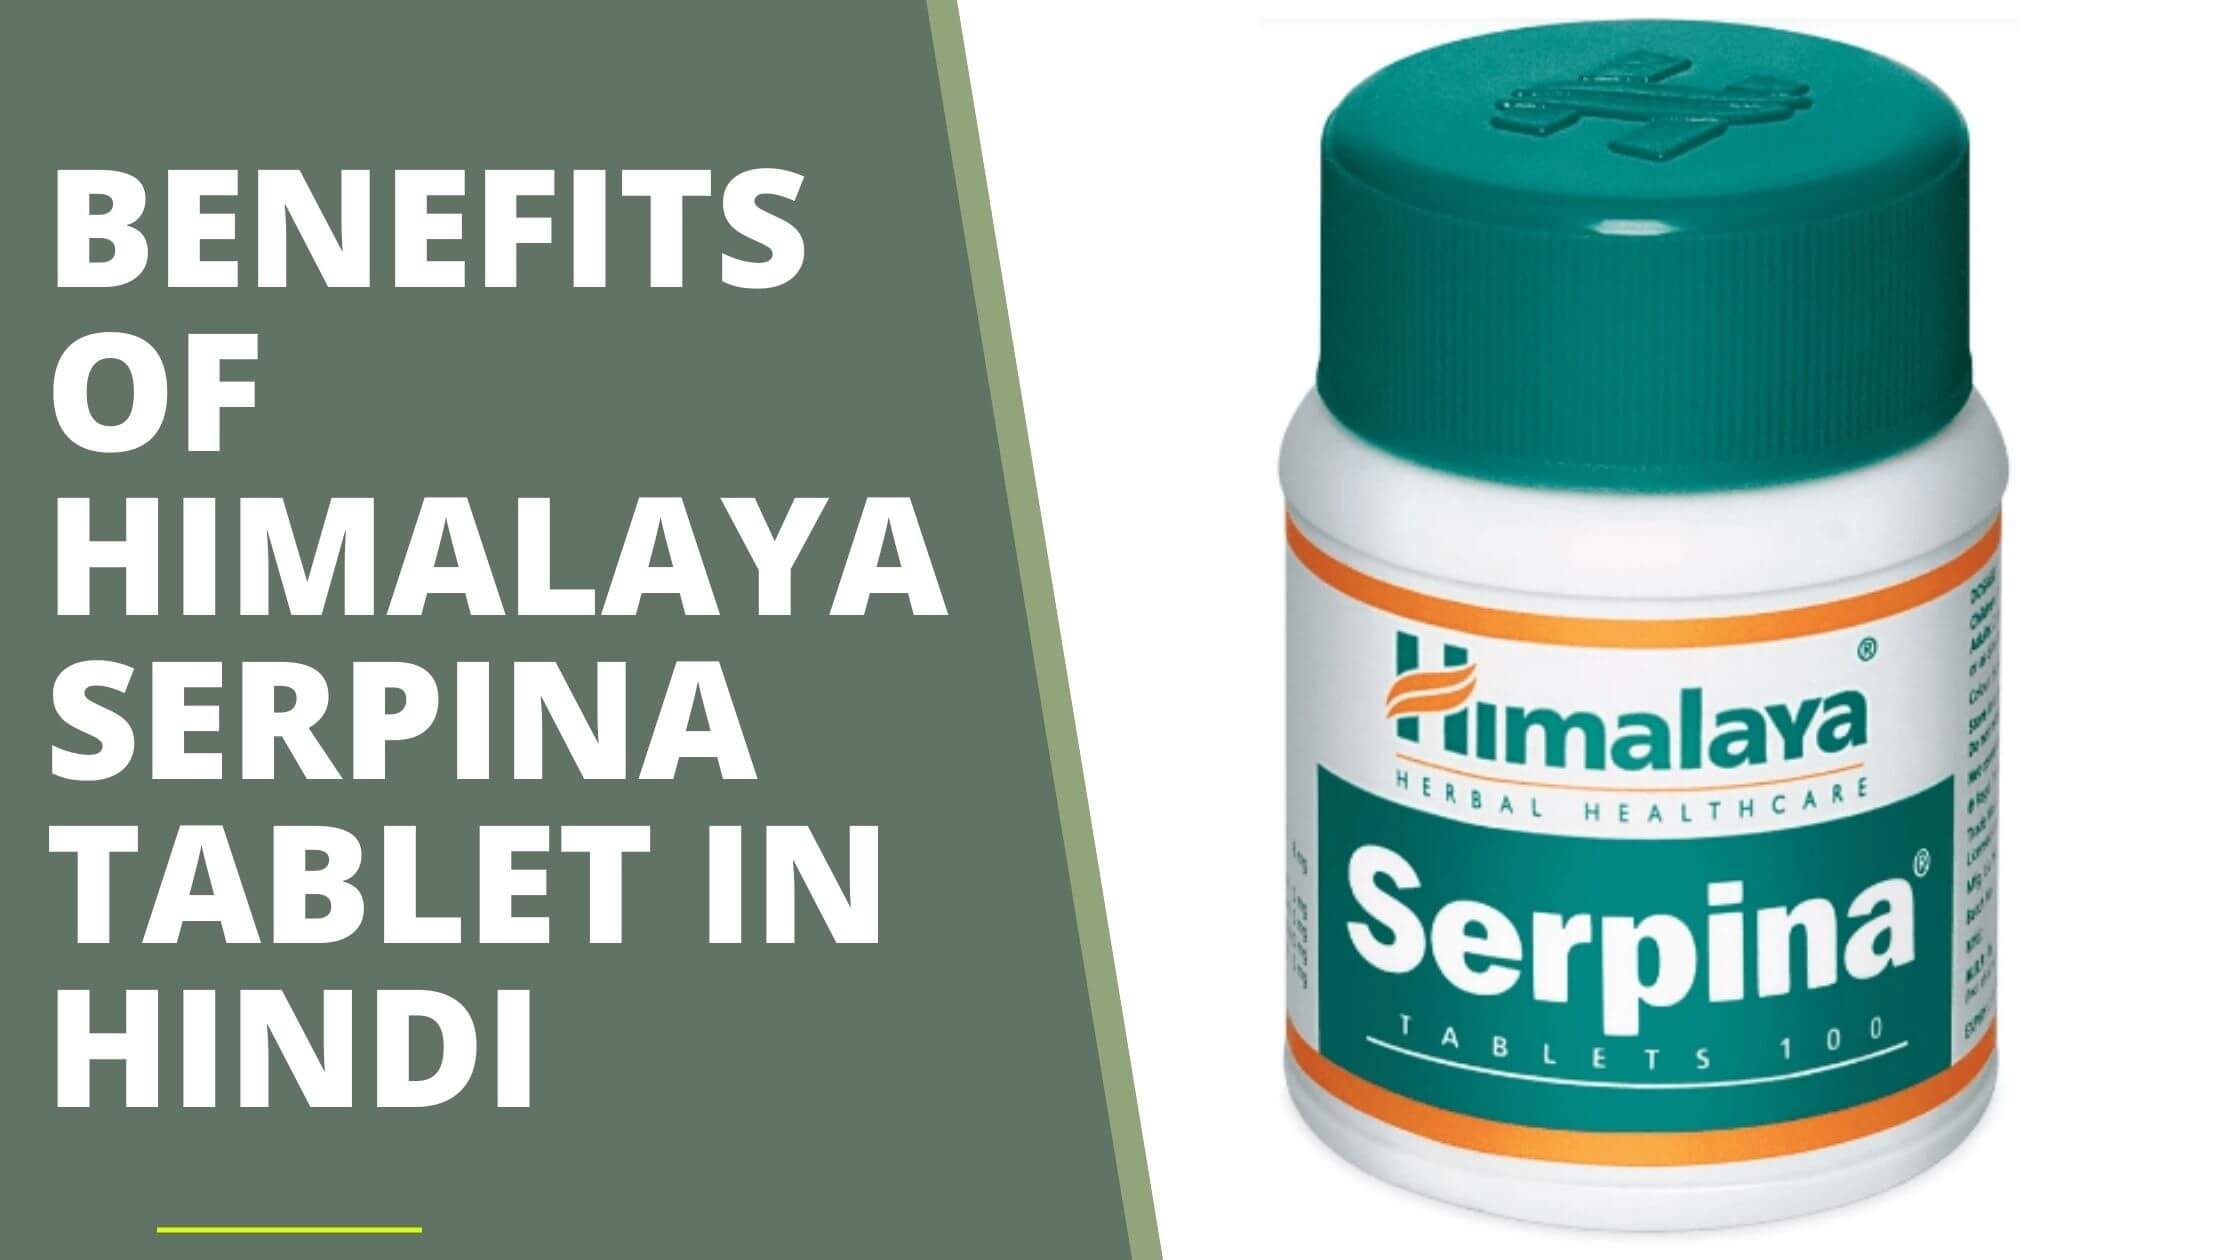 Benefits of Himalaya Serpina Tablet in Hindi (1)